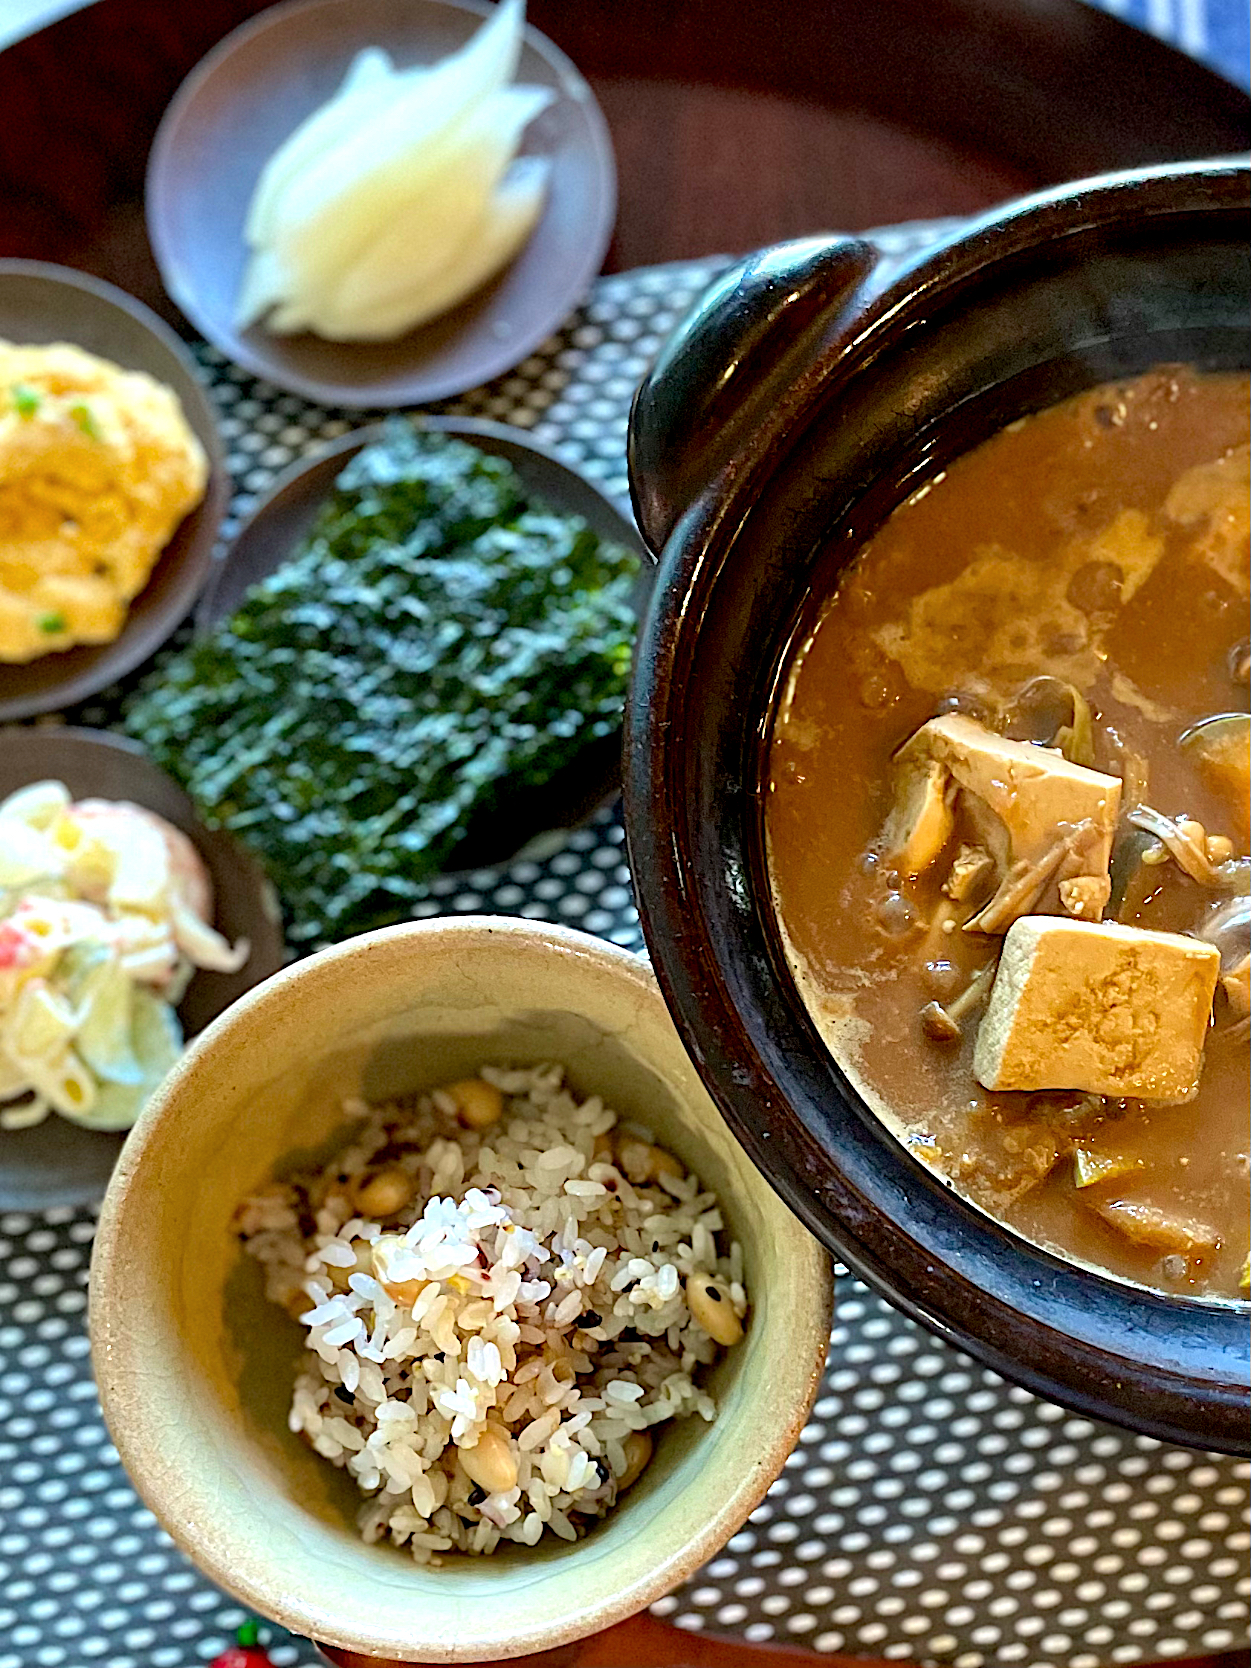 テンジャンチゲ(韓国風味噌汁)で韓国定食